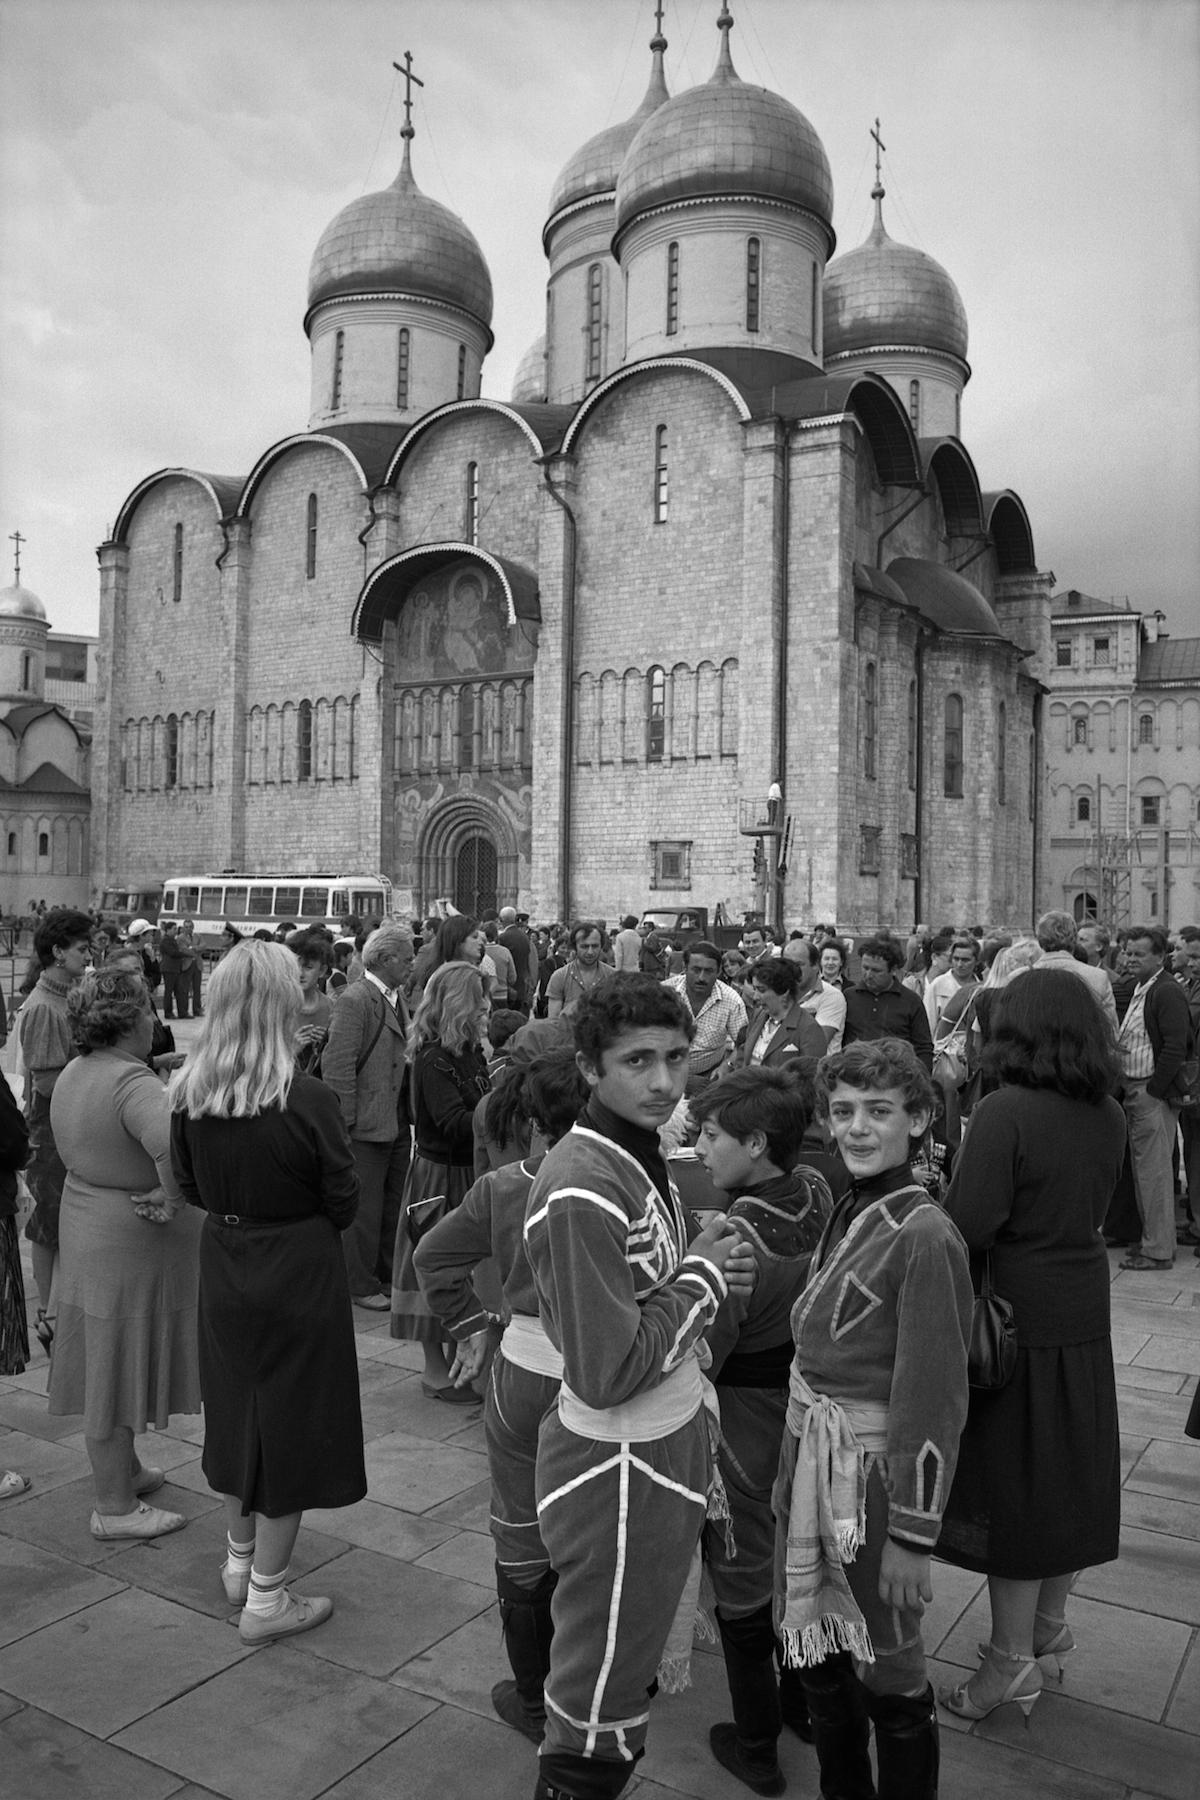 Les Derniers Jours de l'urss à Moscou (1986 – 87)